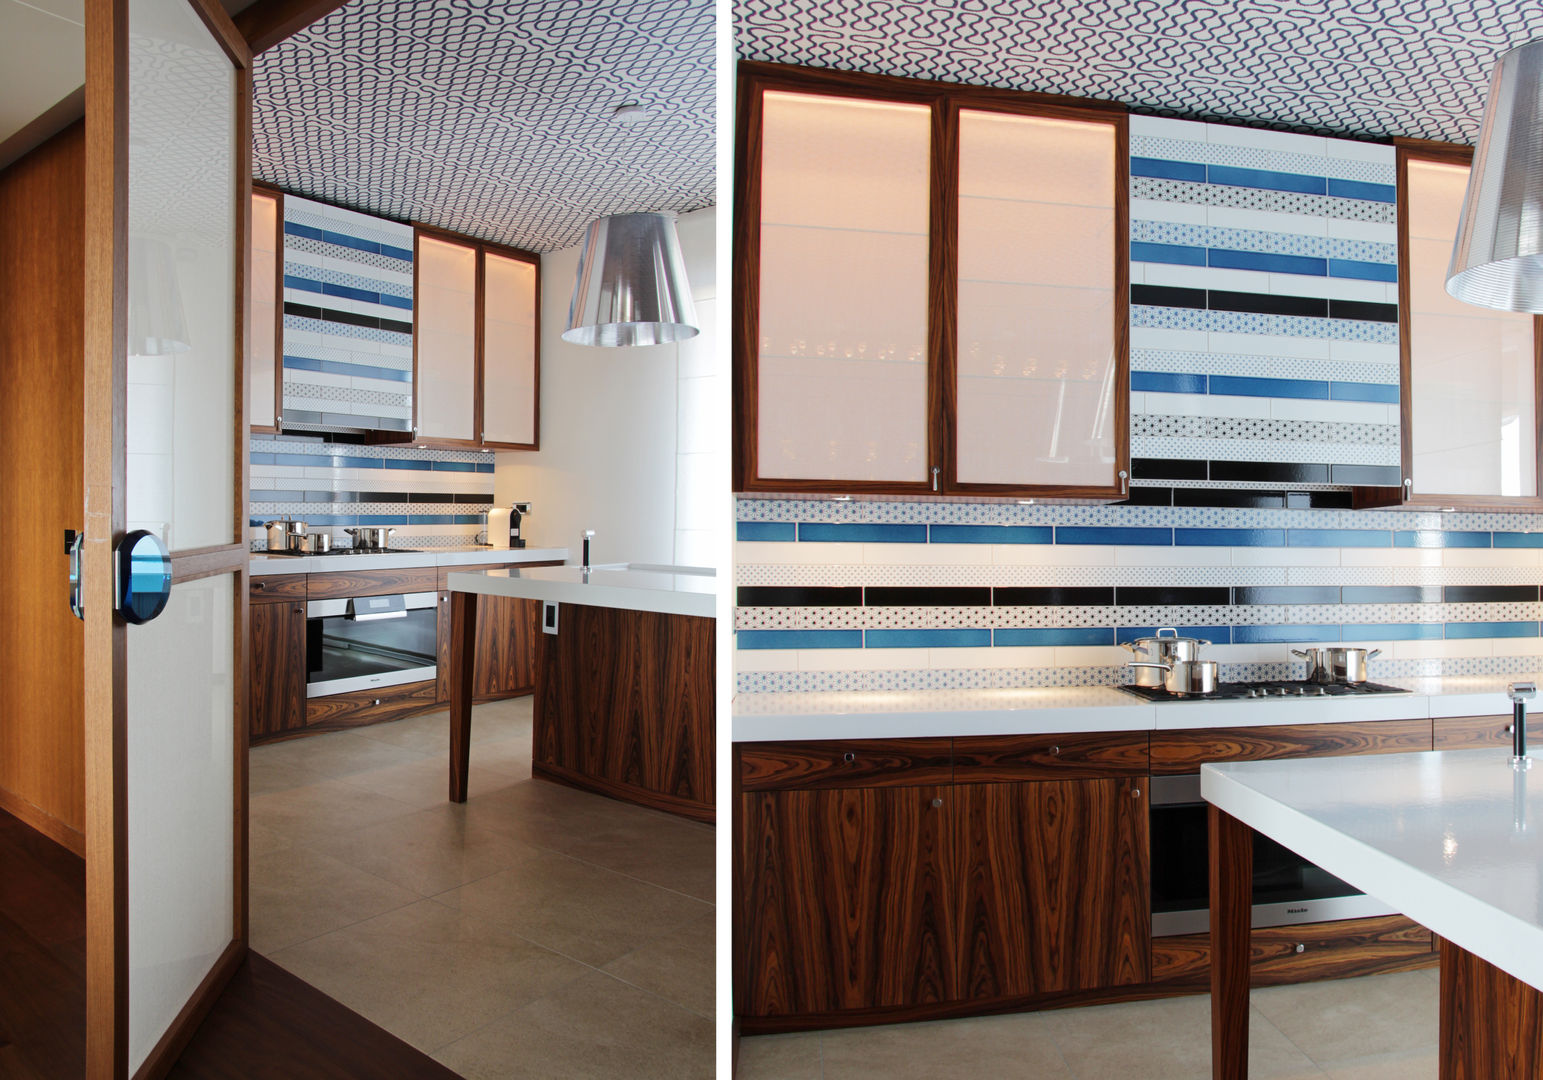 Magnifique déco vintage pour une résidence privée , Studio Catoir Studio Catoir Modern kitchen